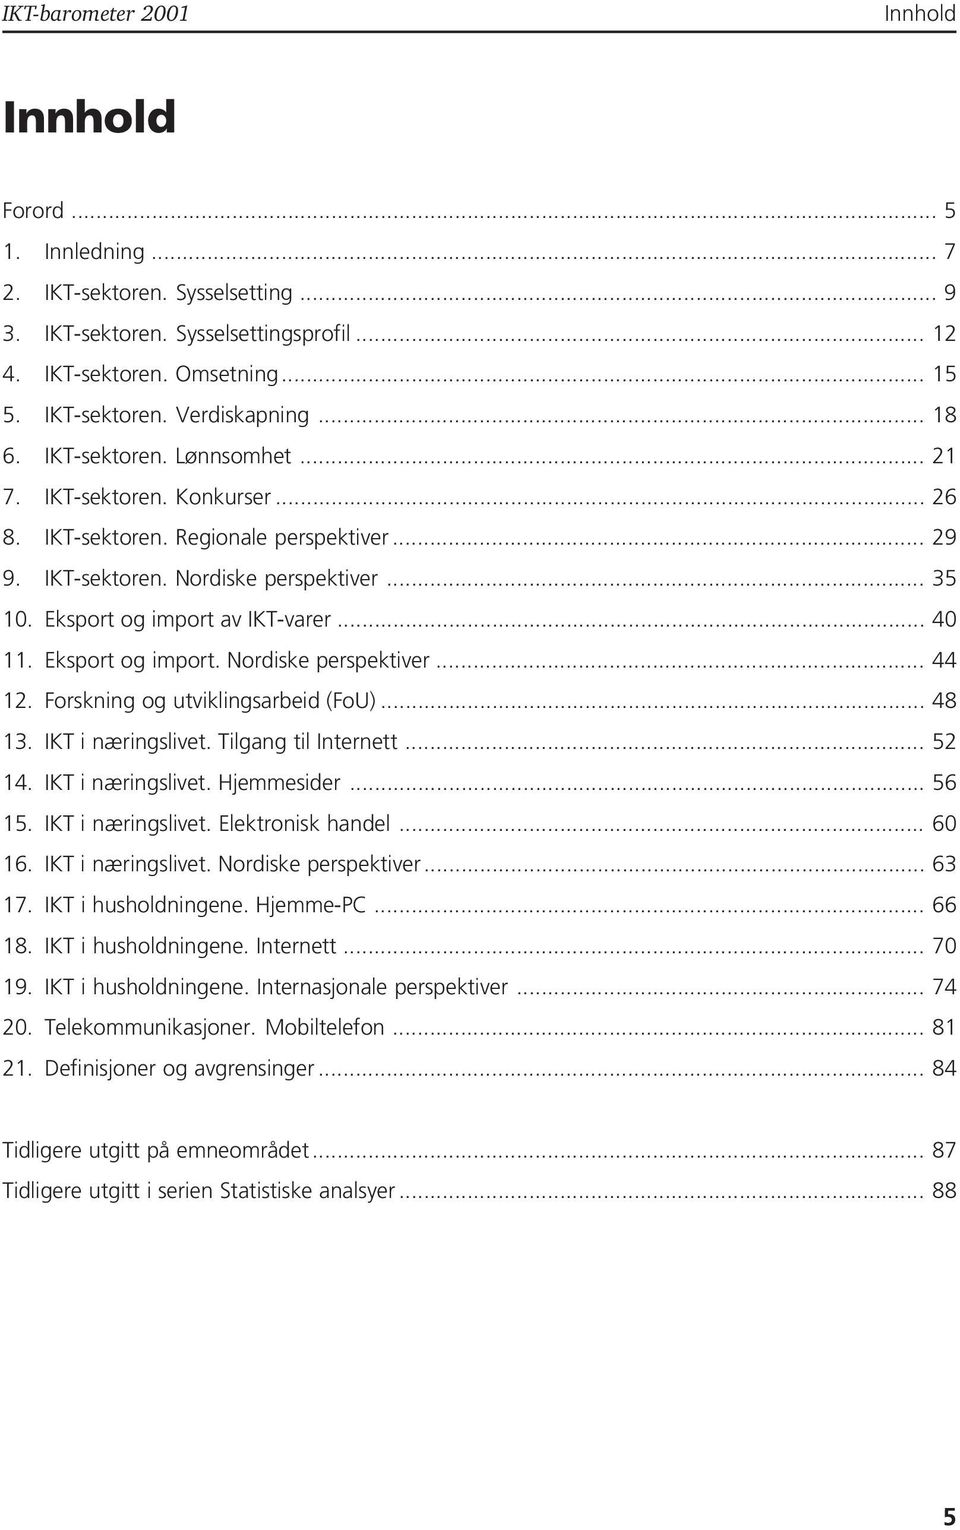 Eksport og import. Nordiske perspektiver... 44 12. Forskning og utviklingsarbeid (FoU)... 48 13. IKT i næringslivet. Tilgang til Internett... 52 14. IKT i næringslivet. Hjemmesider... 56 15.